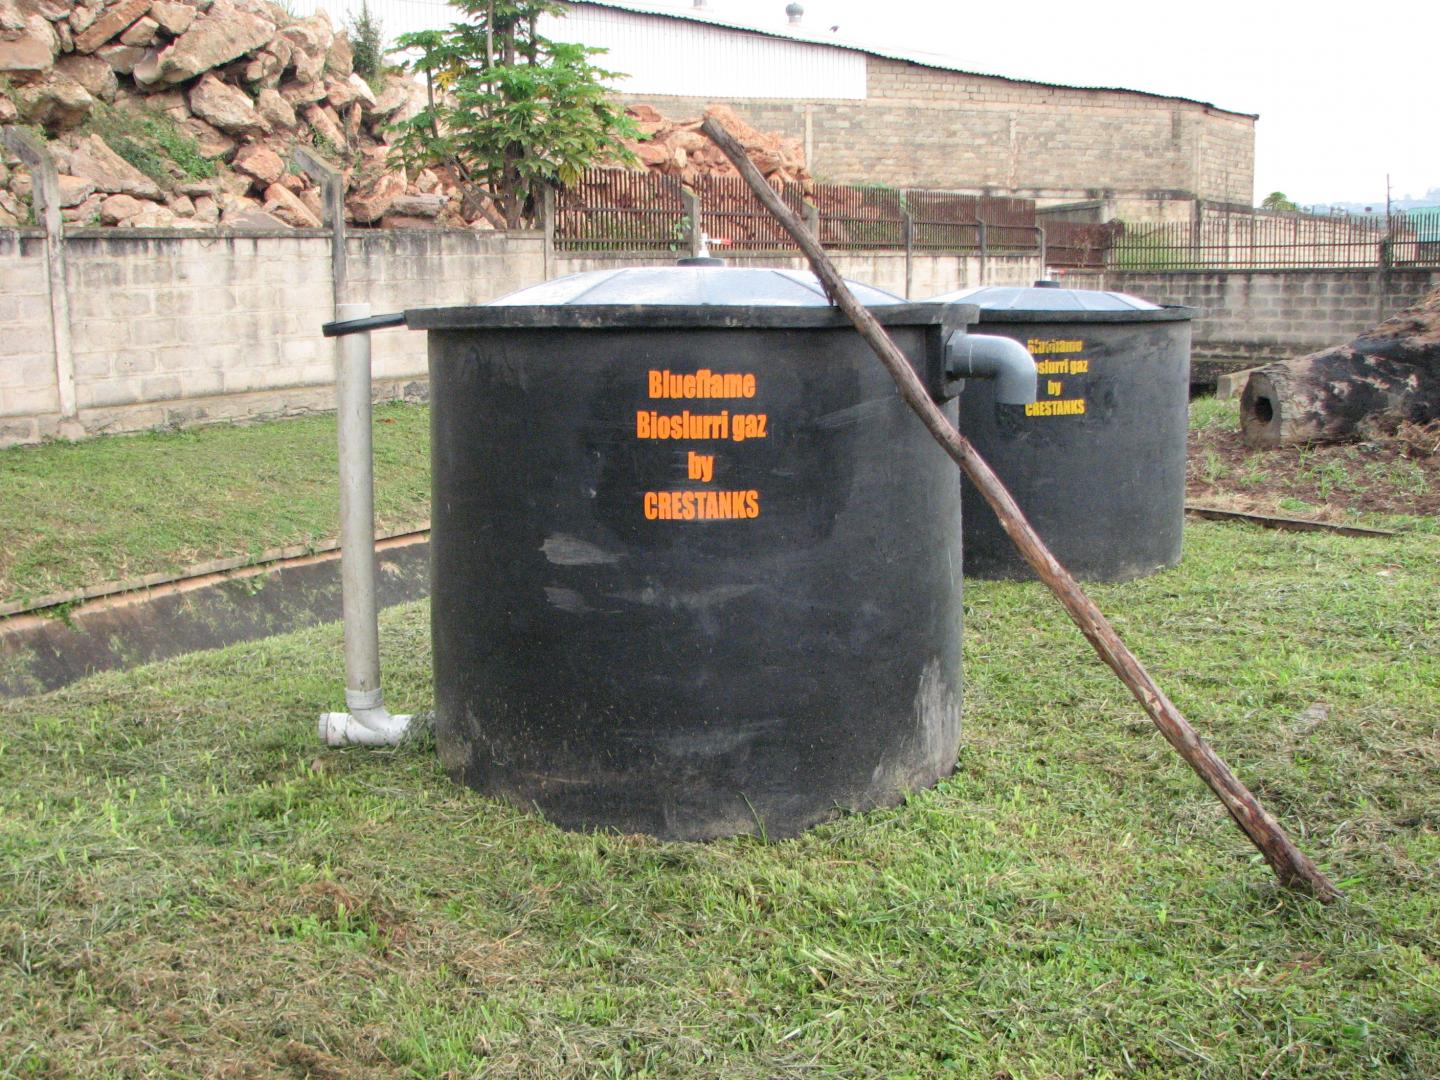 Energie : Les excréments humains recèlent d’importantes quantités de biogaz inexploitées